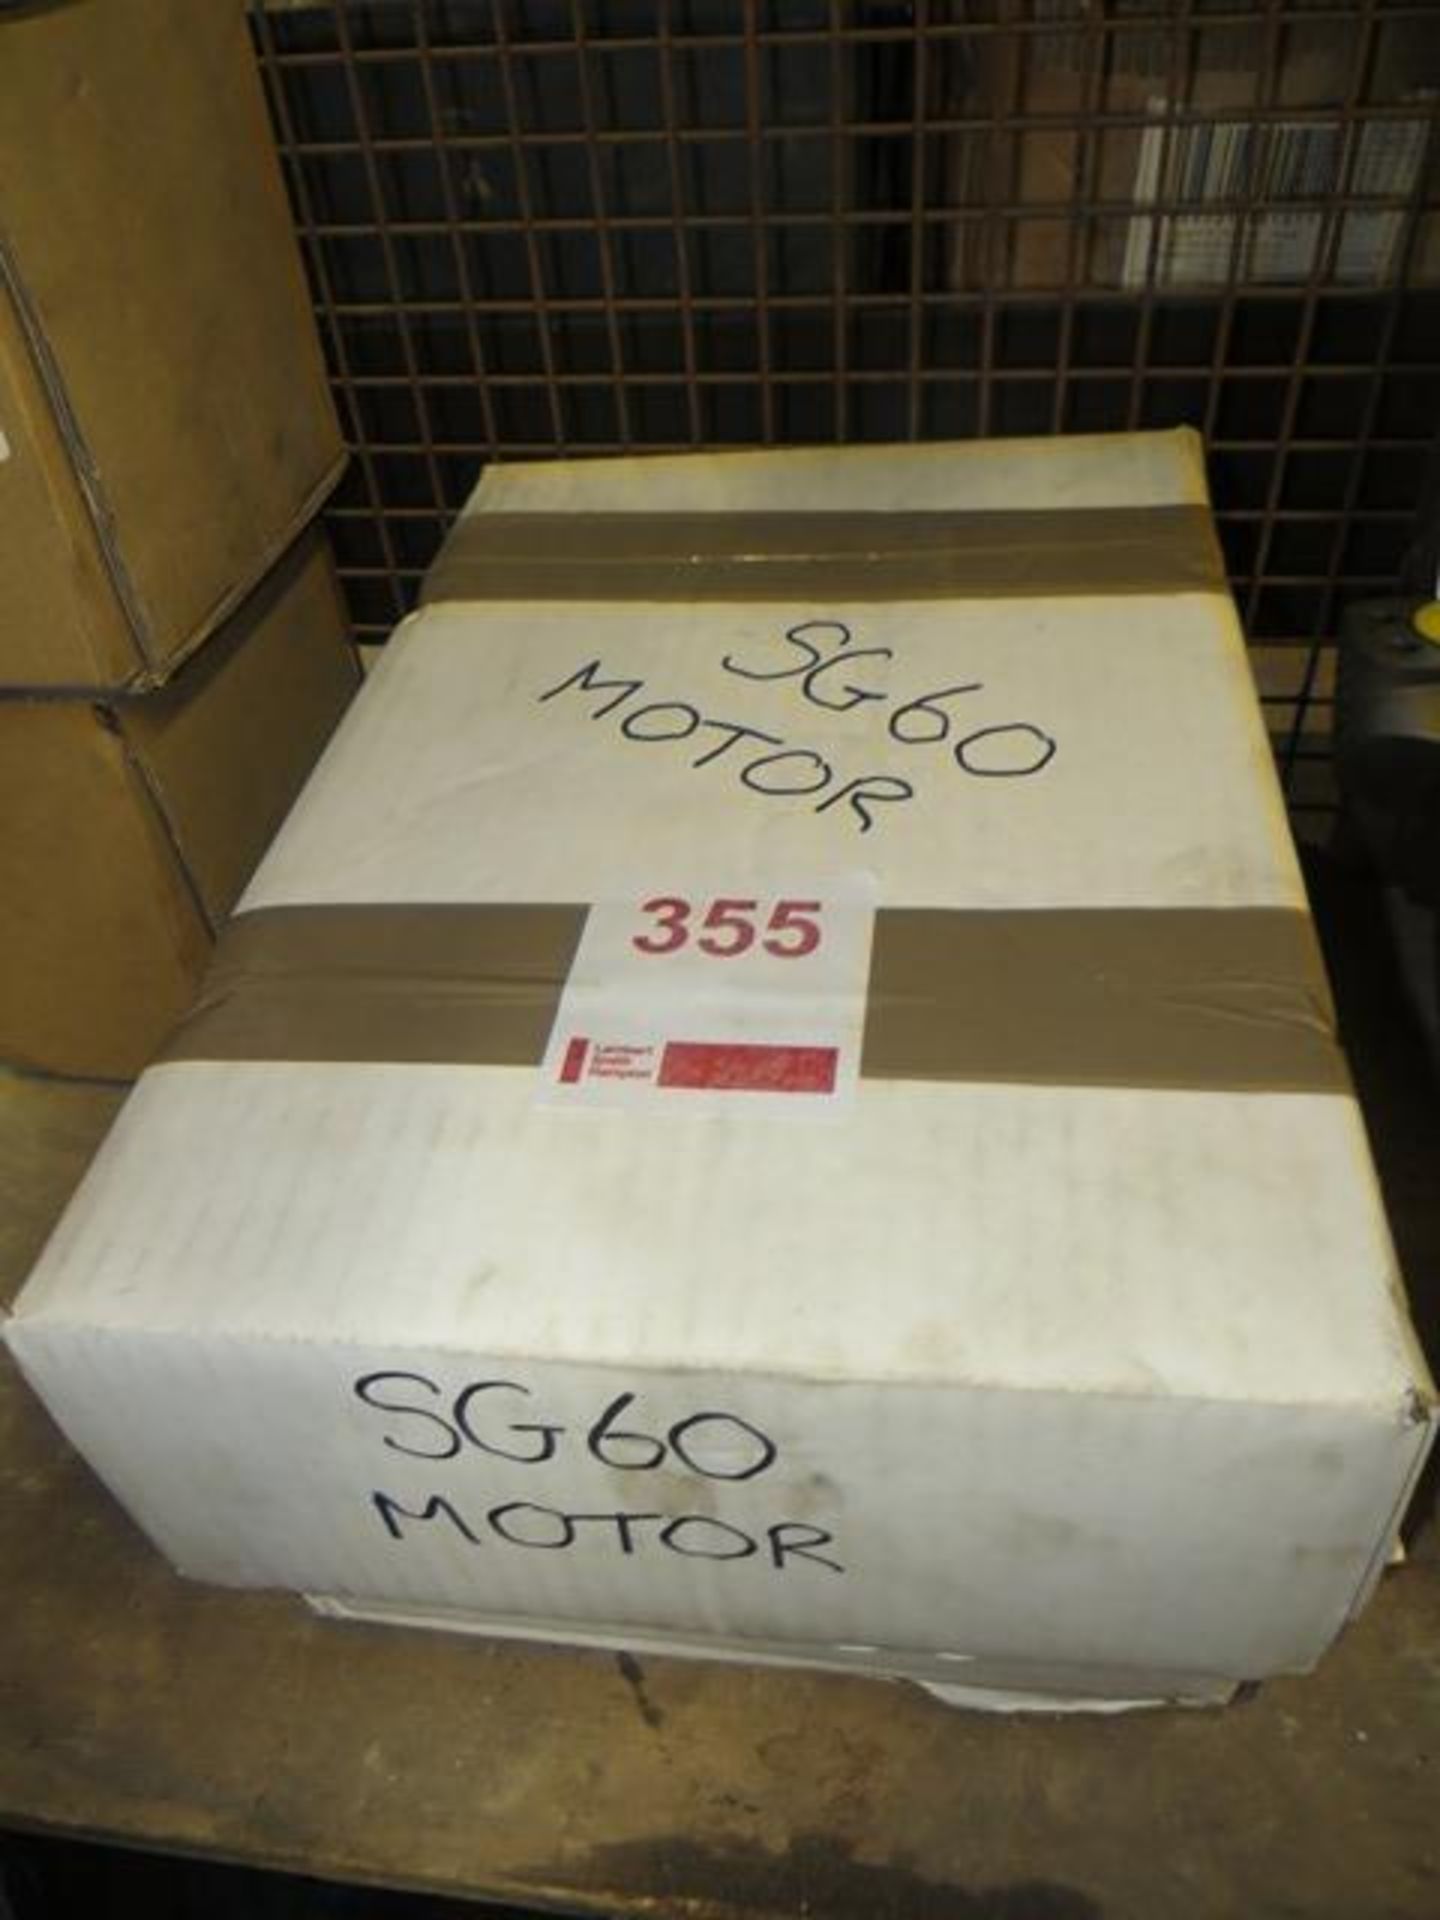 SG60 Vibro motor